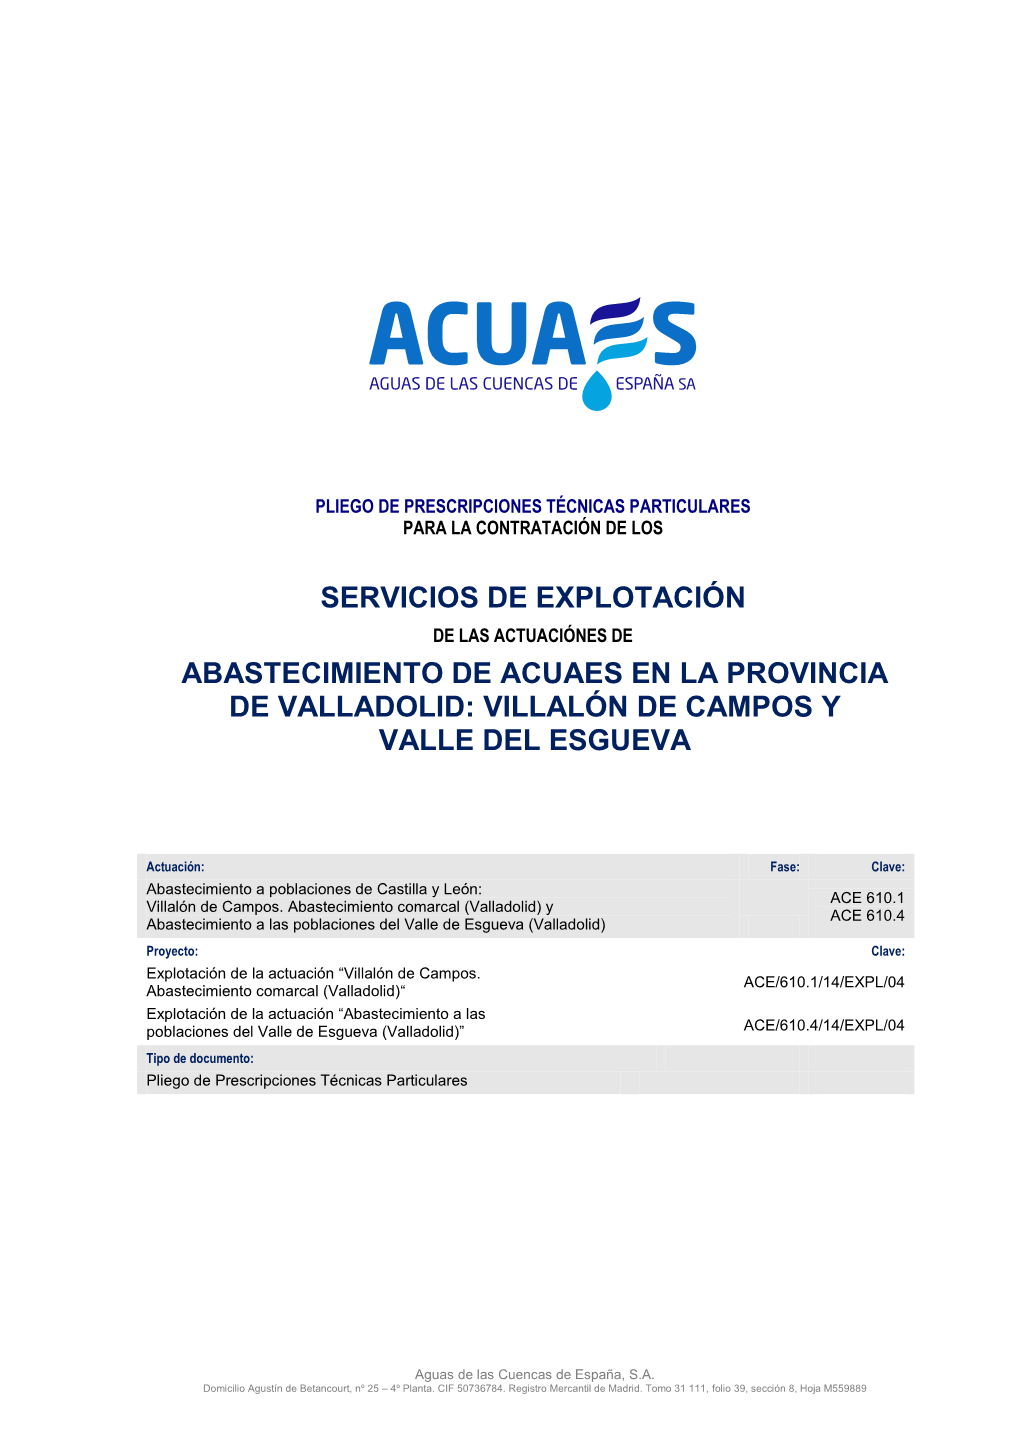 Abastecimiento De Acuaes En La Provincia De Valladolid: Villalón De Campos Y Valle Del Esgueva